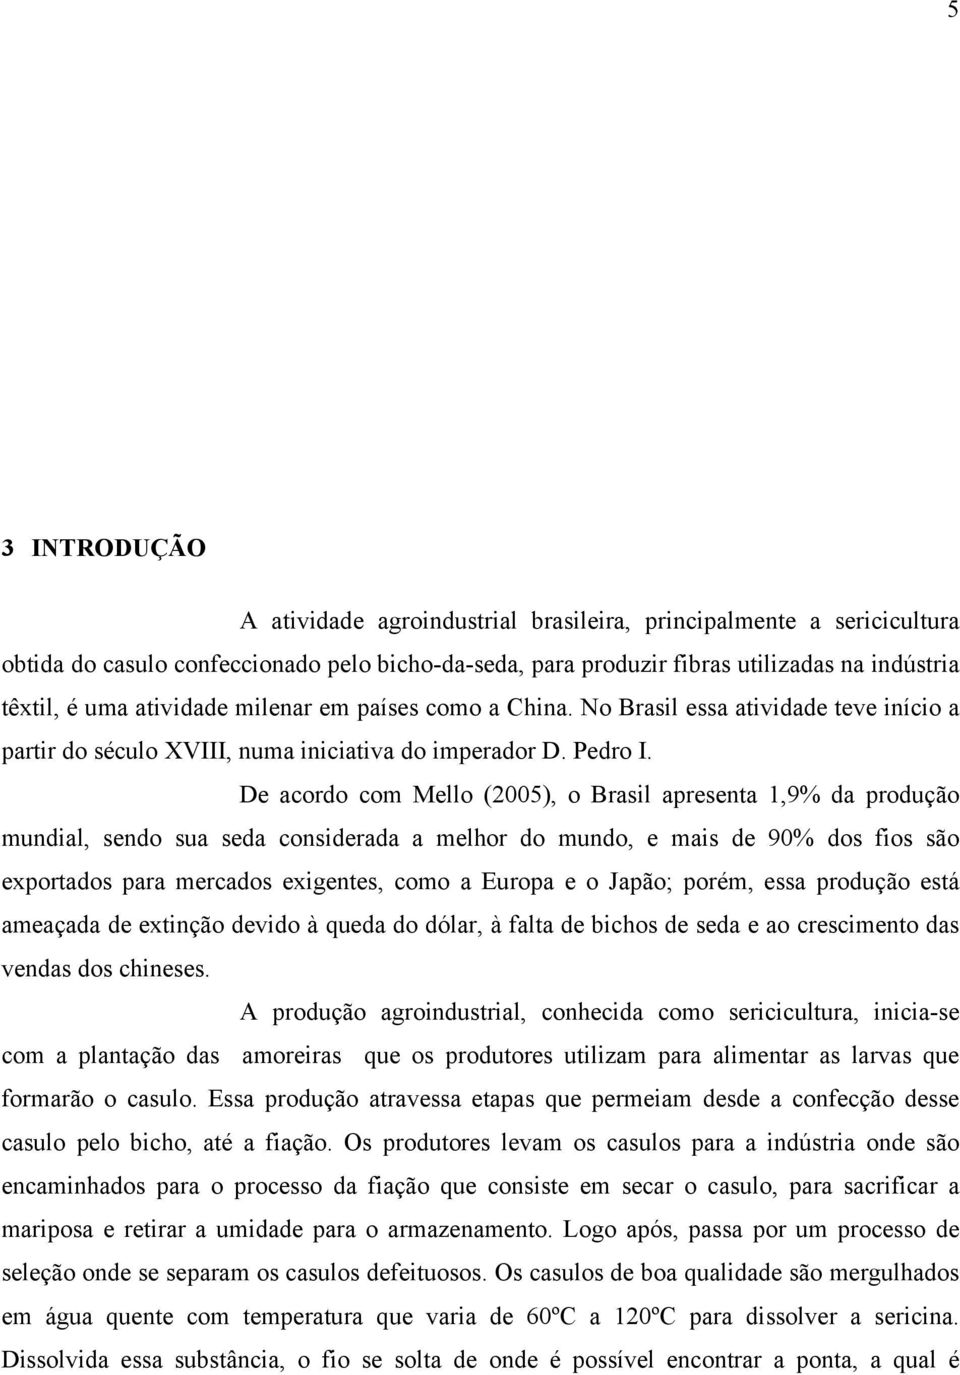 De acordo com Mello (2005), o Brasil apresenta 1,9% da produção mundial, sendo sua seda considerada a melhor do mundo, e mais de 90% dos fios são exportados para mercados exigentes, como a Europa e o